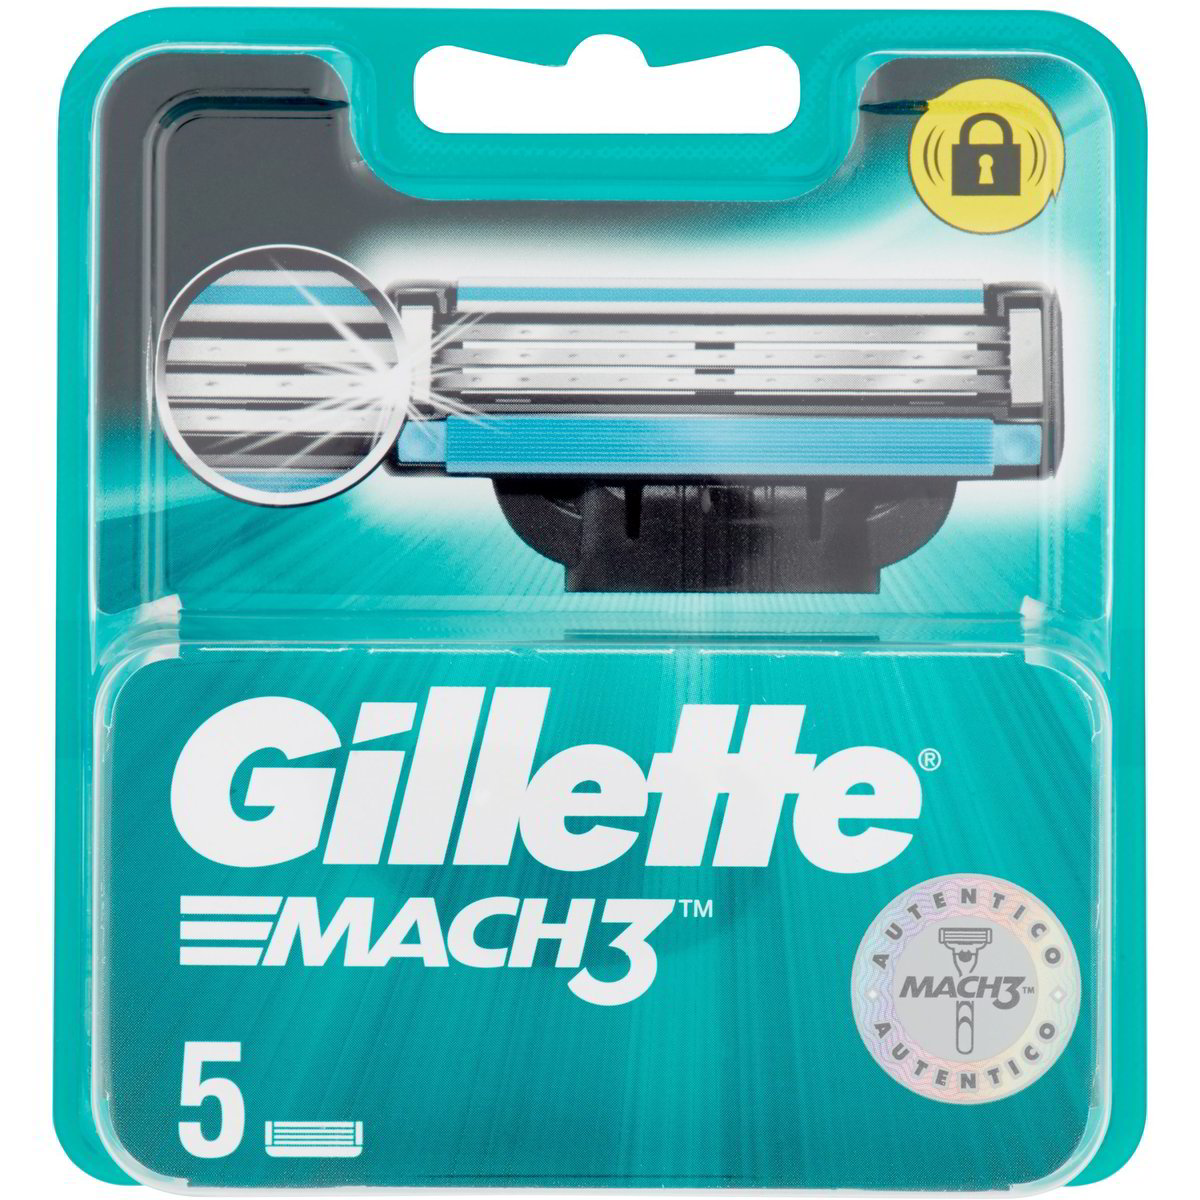 Gillette Mach3 ricarica lamette